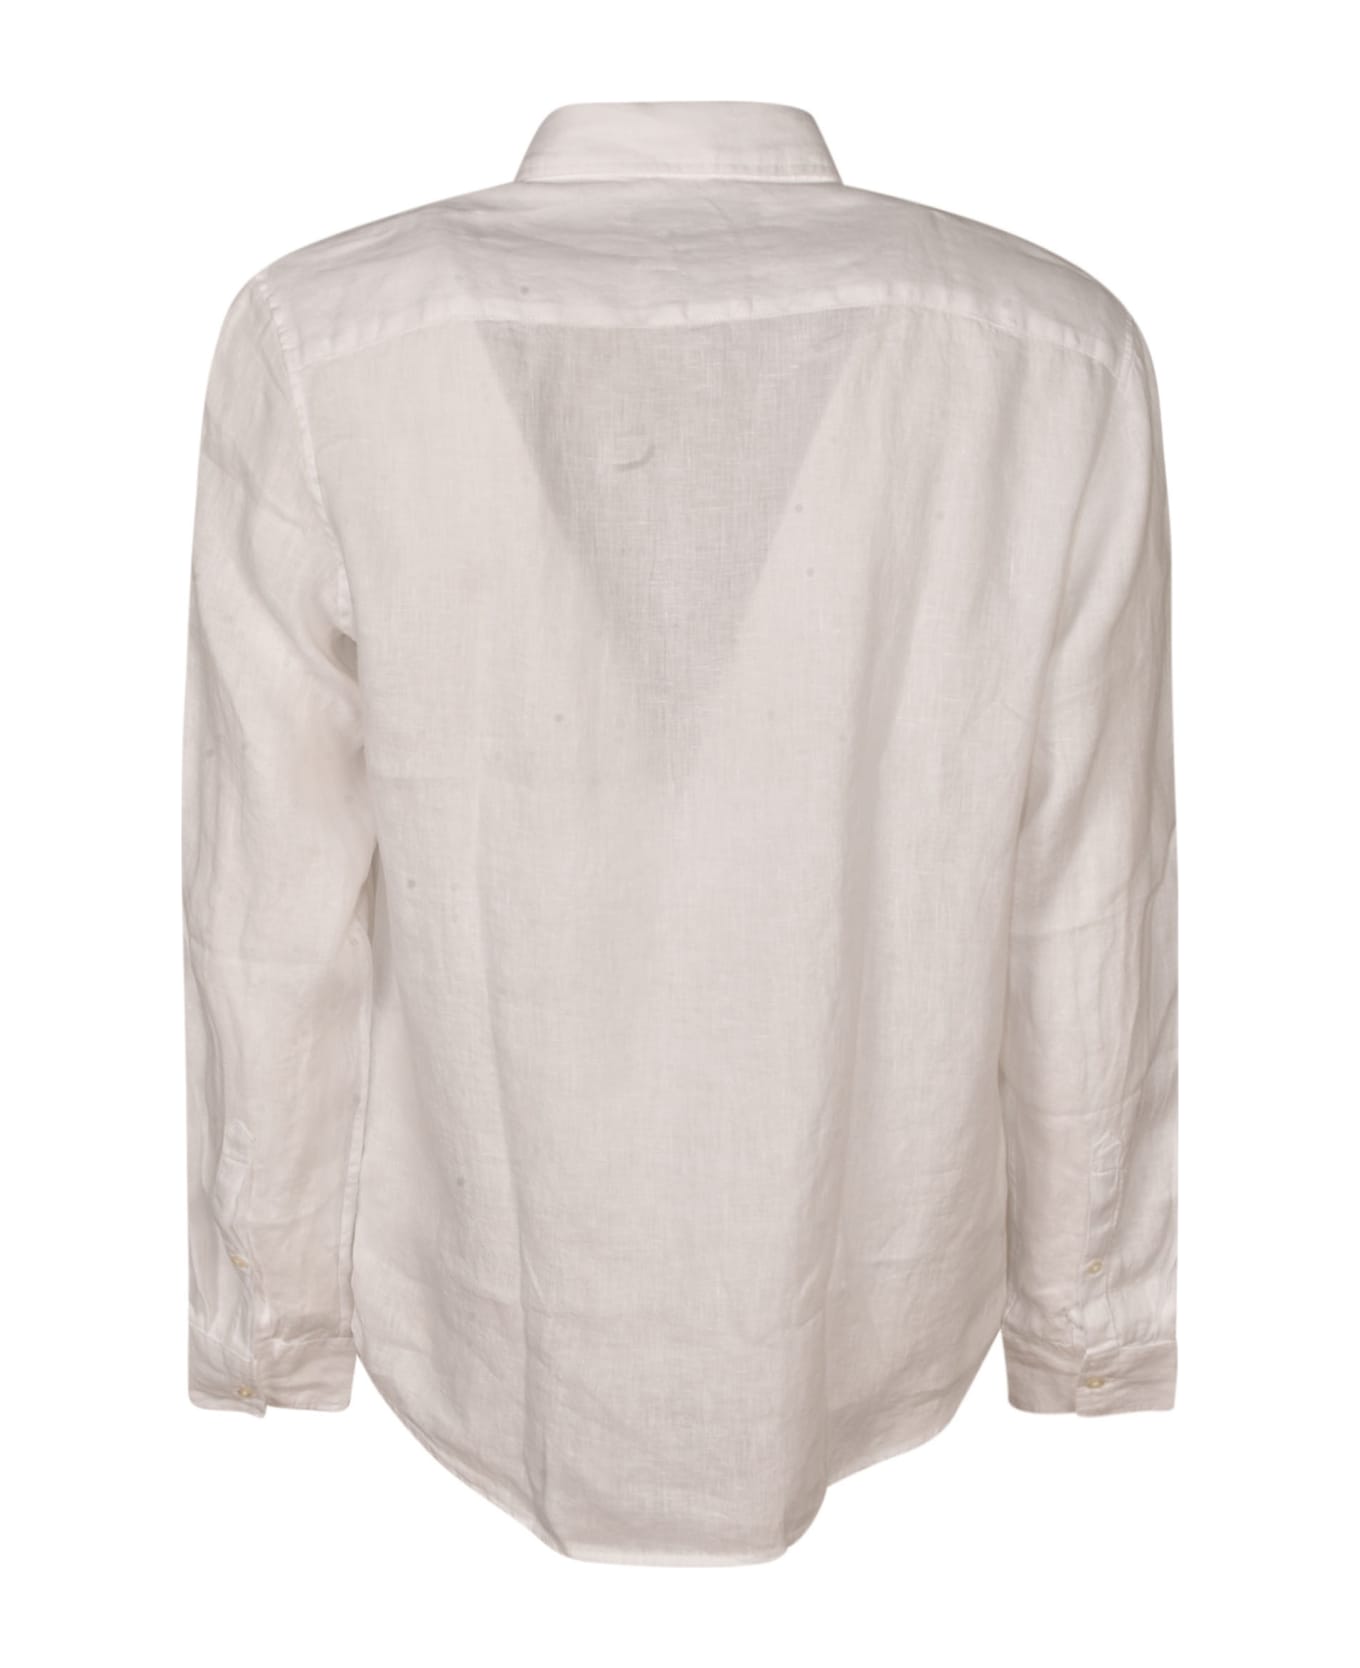 Michael Kors Classic Plain Shirt - White